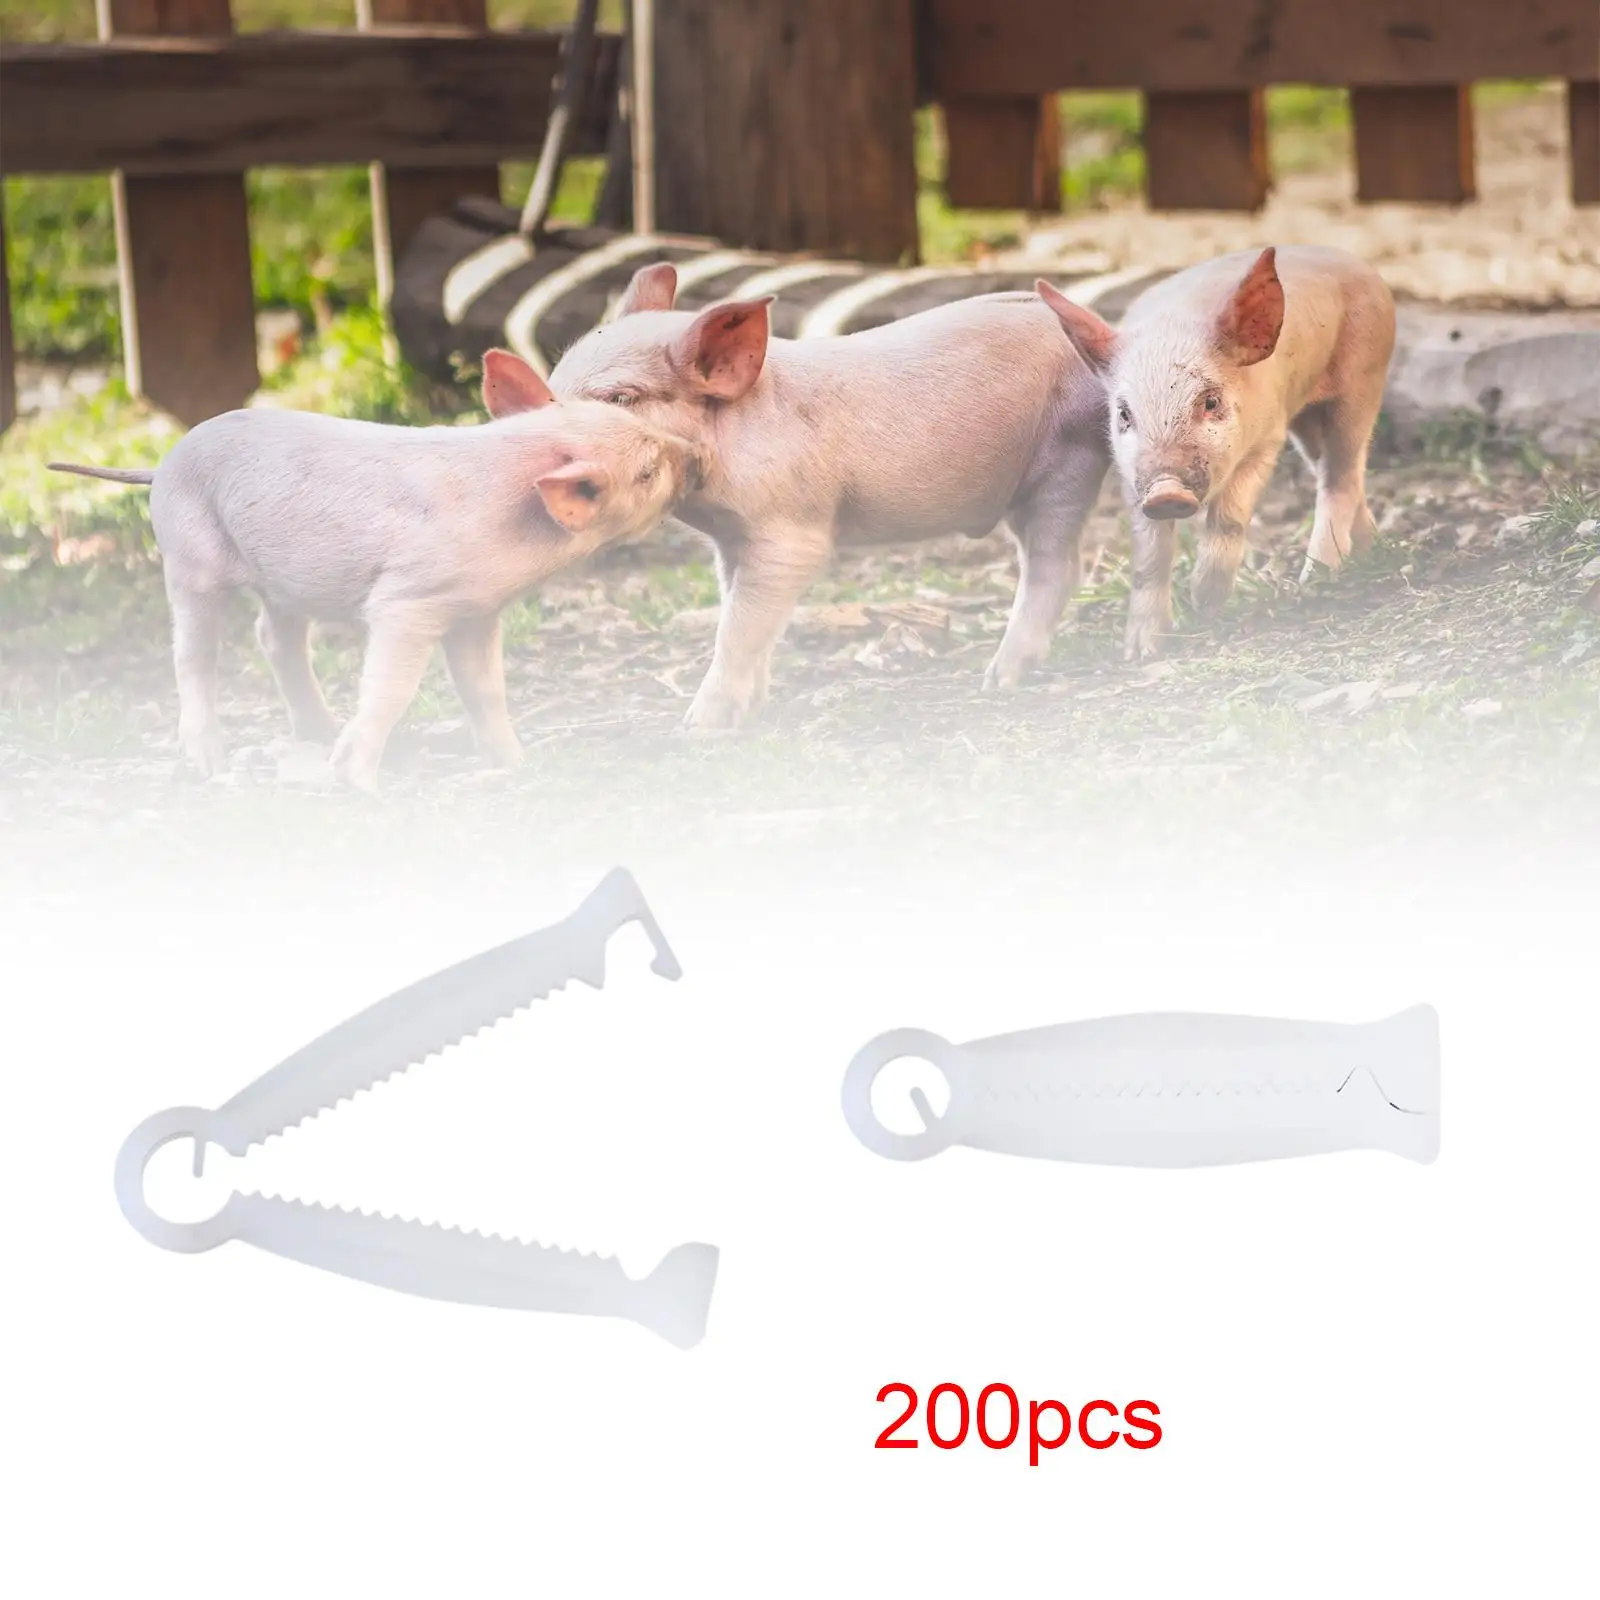 200Pcs Livestock Birth Supplies Disposable Whelping Kits for Lamb Pigs Sheep